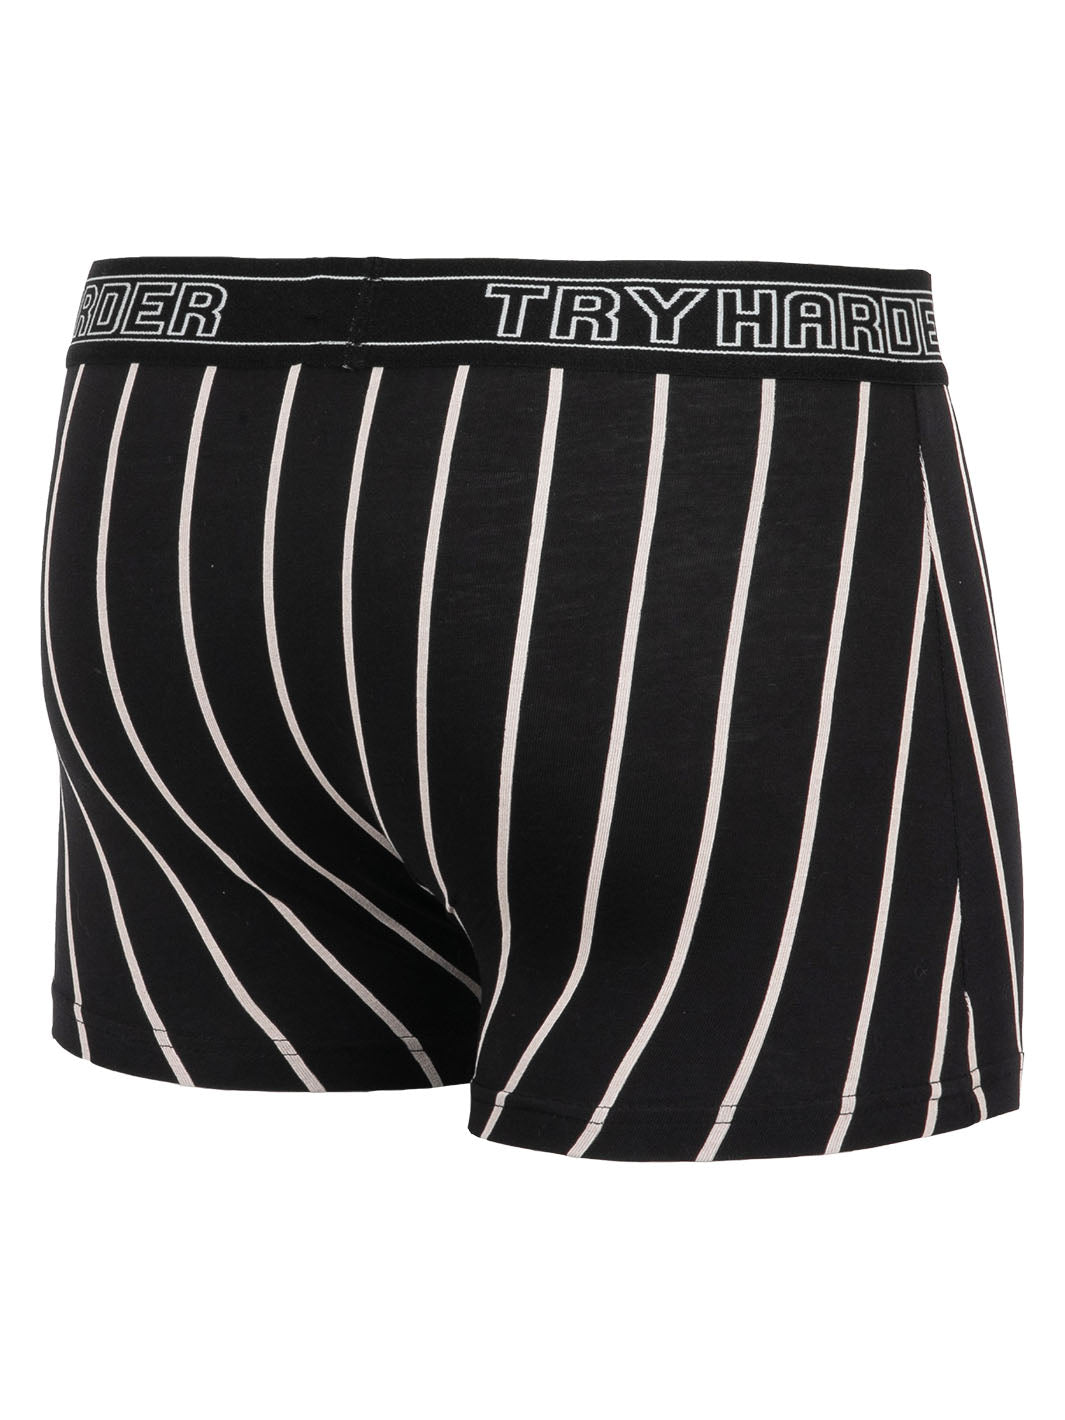 TRYHARDER - Boxer - Black White stripes 1 pack